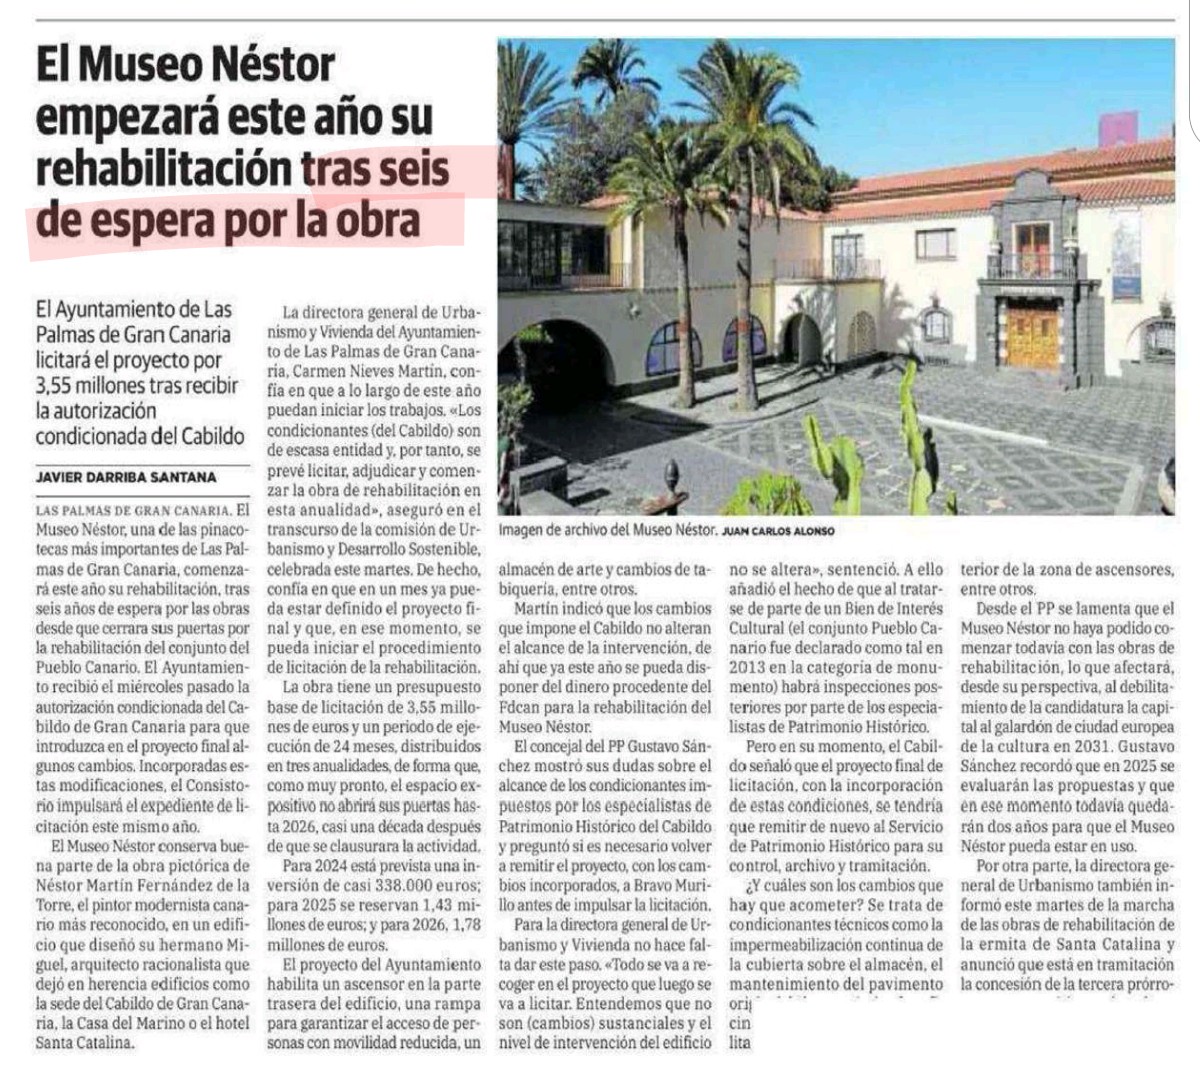 El Museo Canario lleva 7 años 'CERRADO POR OBRAS', pero las obras ni siquiera han sido licitadas!
#MarcaLasPalmas @AyuntamientoLPA @lpaurbanismo